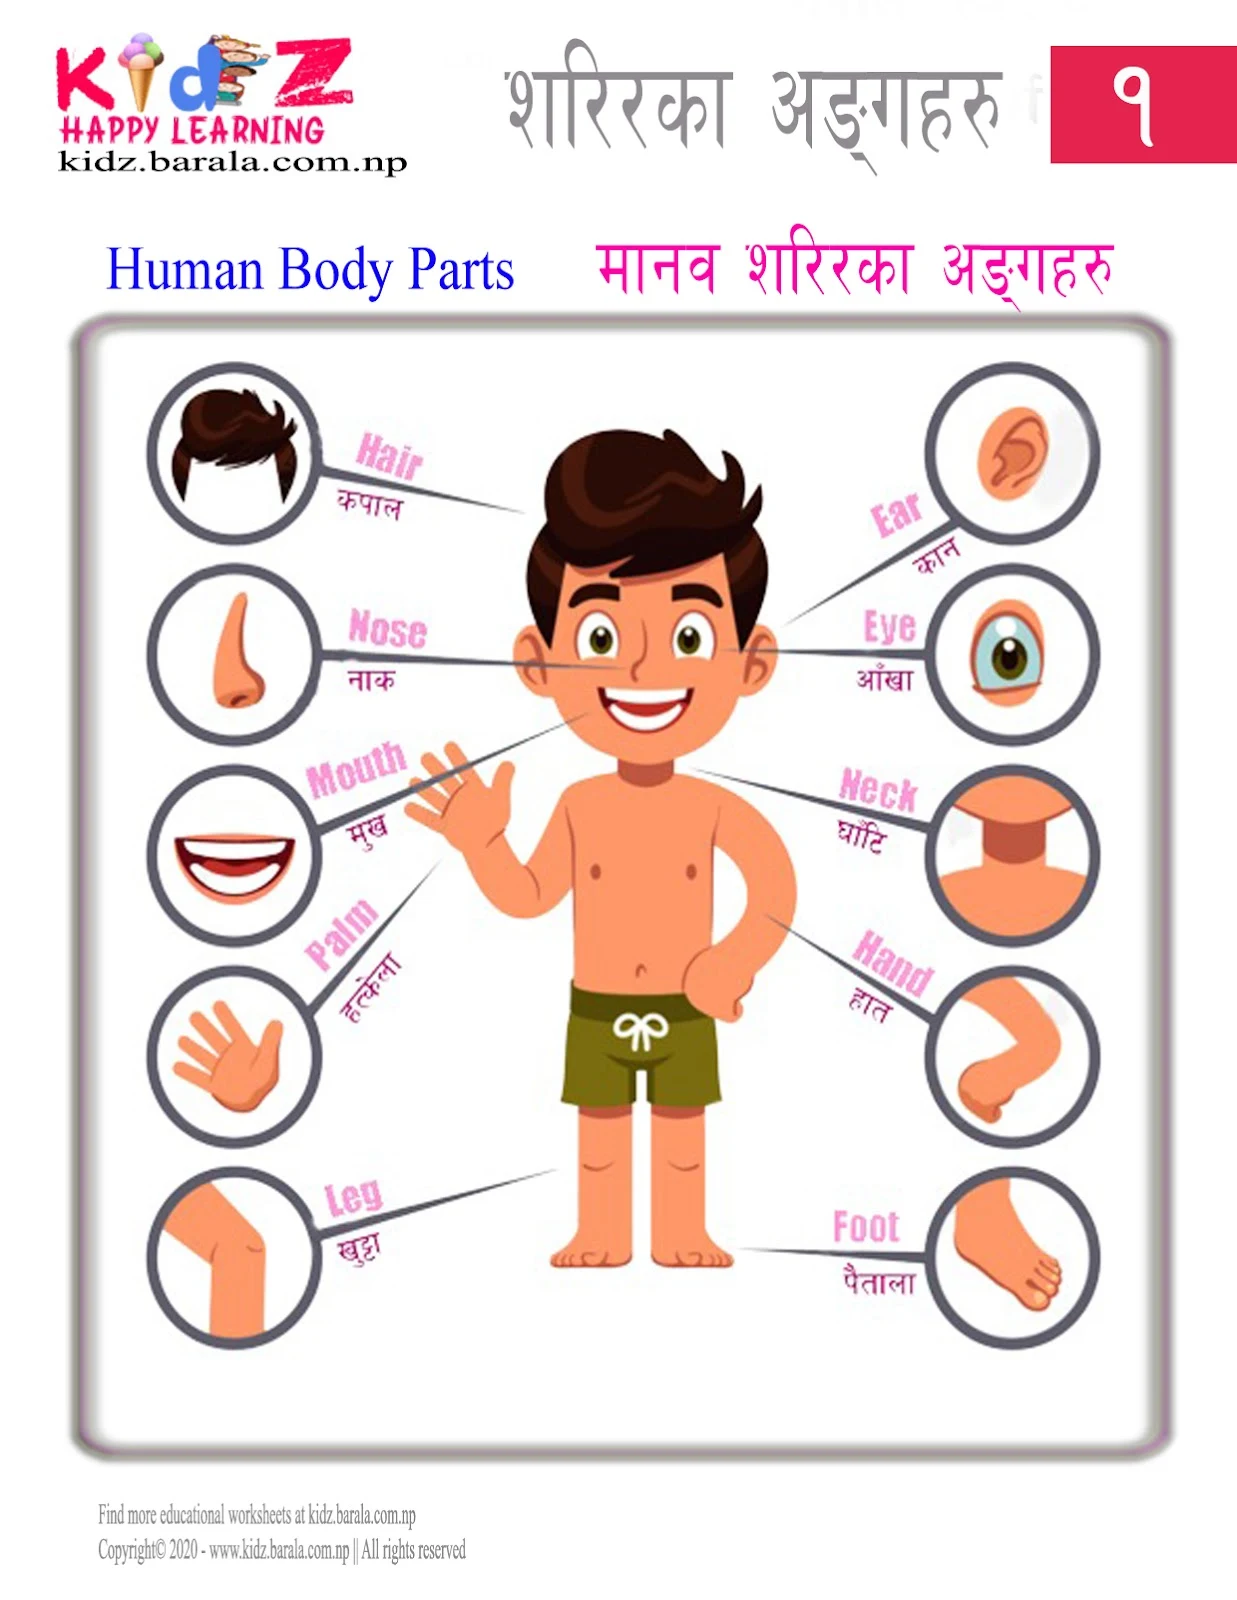 Human Body Parts in English and Nepali मानव शरिरका अङ्गहरु